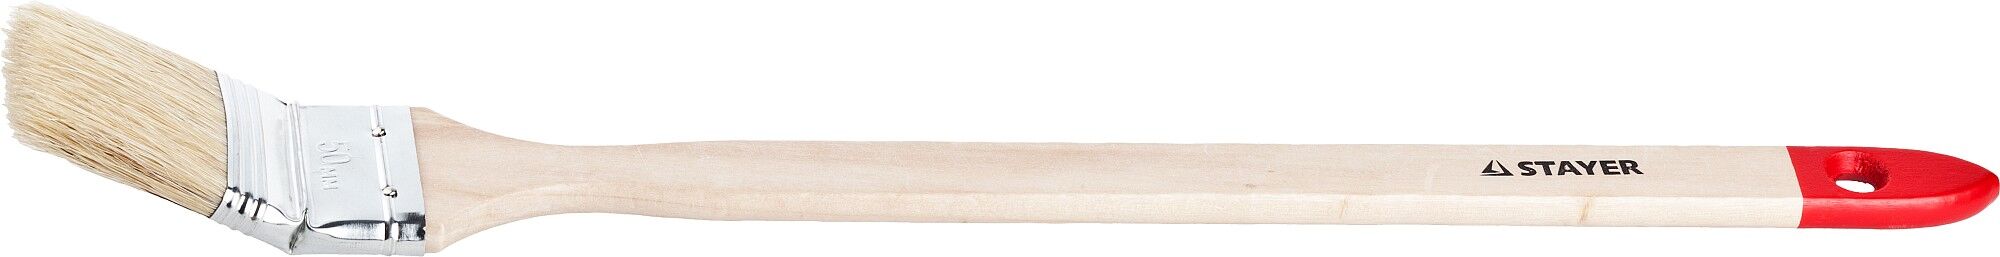 STAYER UNIVERSAL 50 мм, 2″ светлая натуральная щетина, деревянная ручка, для всех видов ЛКМ, Радиаторная кисть, MASTER (